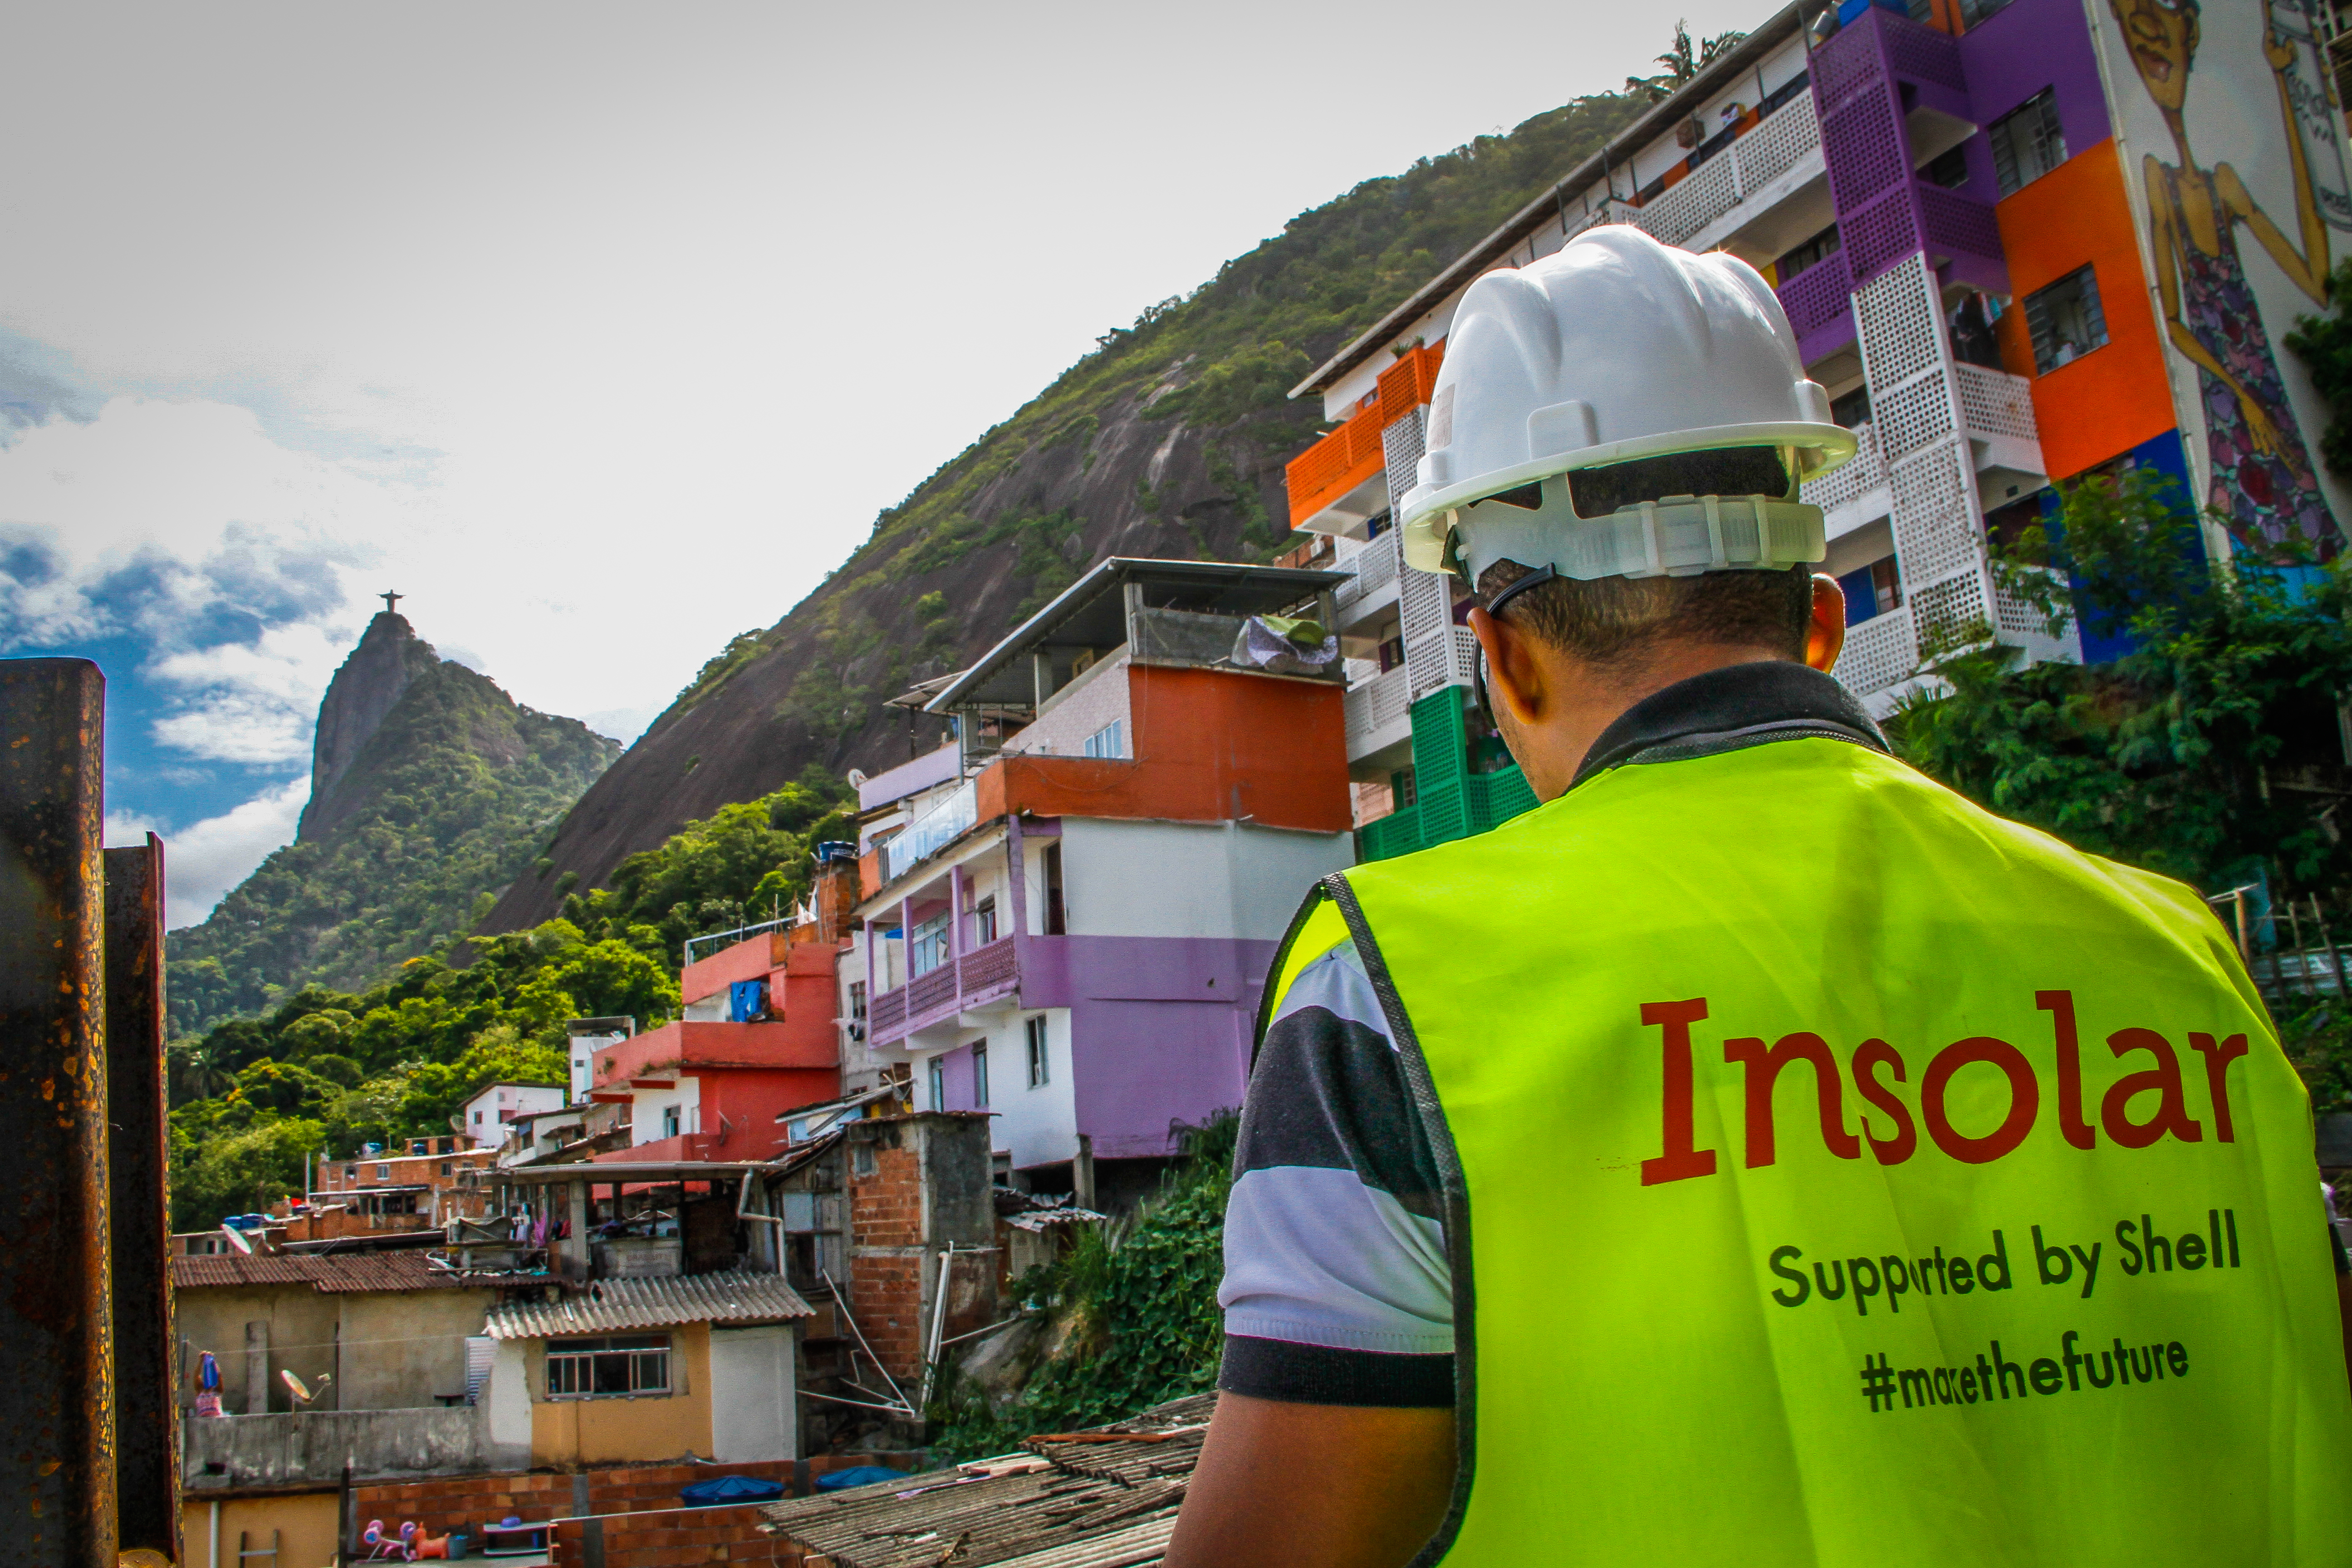 Próximos passos: a Insolar já estuda estender o projeto para outras comunidades no Rio de Janeiro